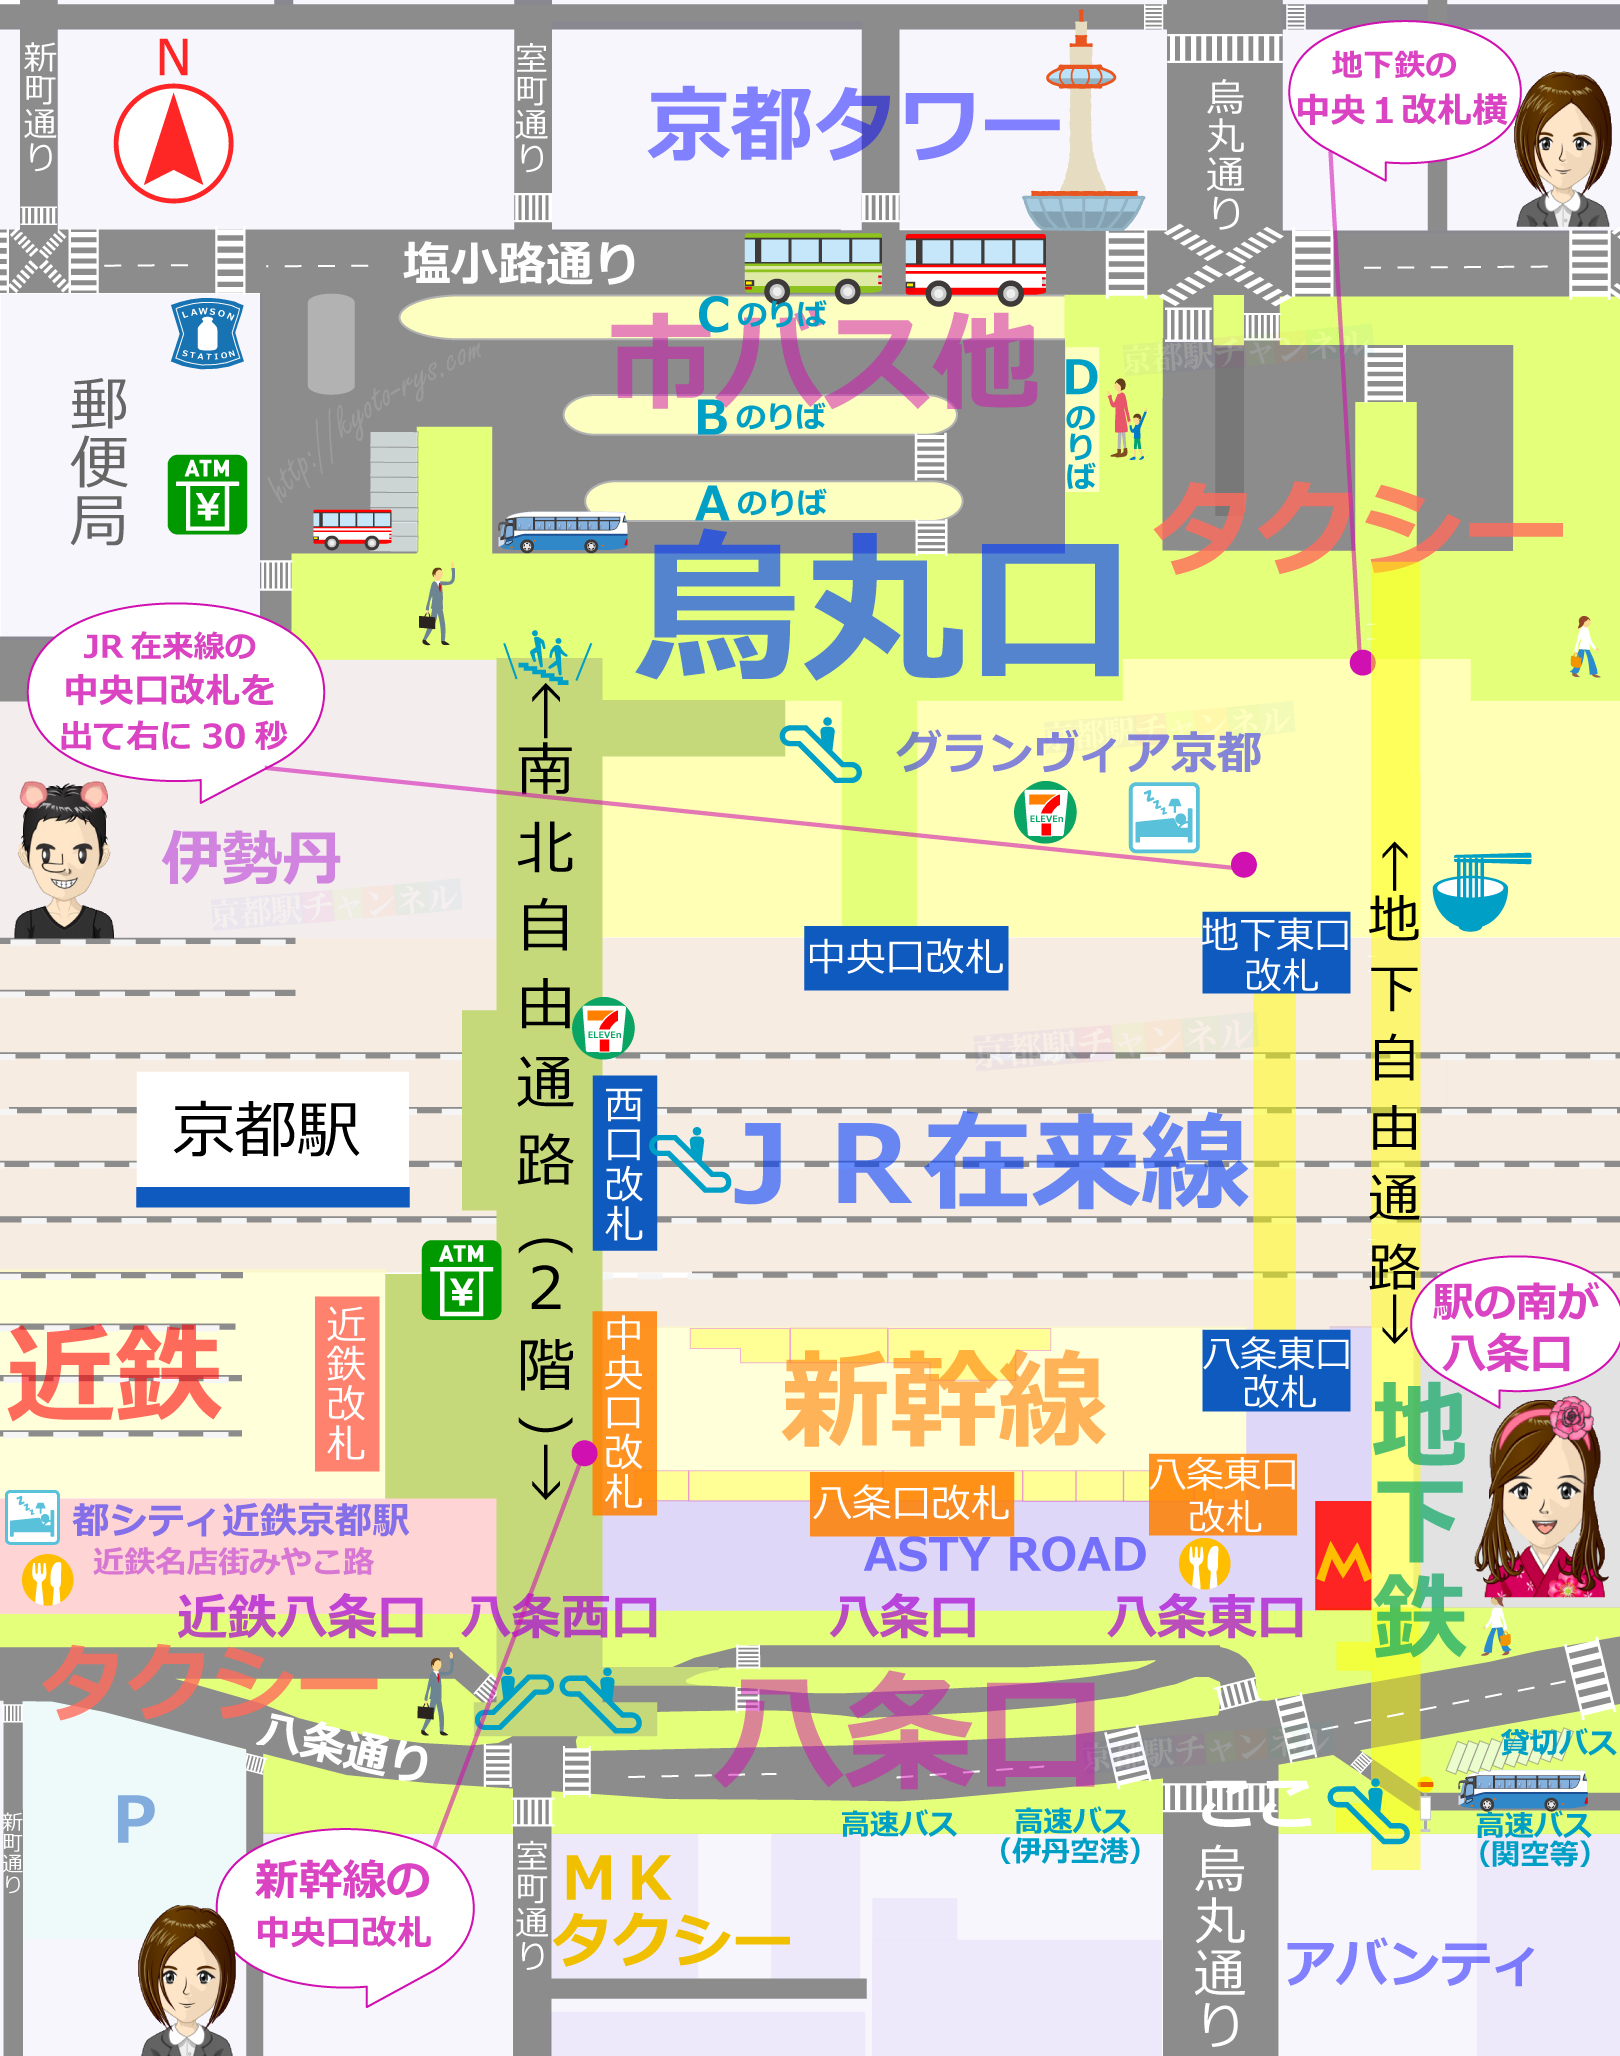 京都駅の全体図と三井住友銀行のATMのマップ